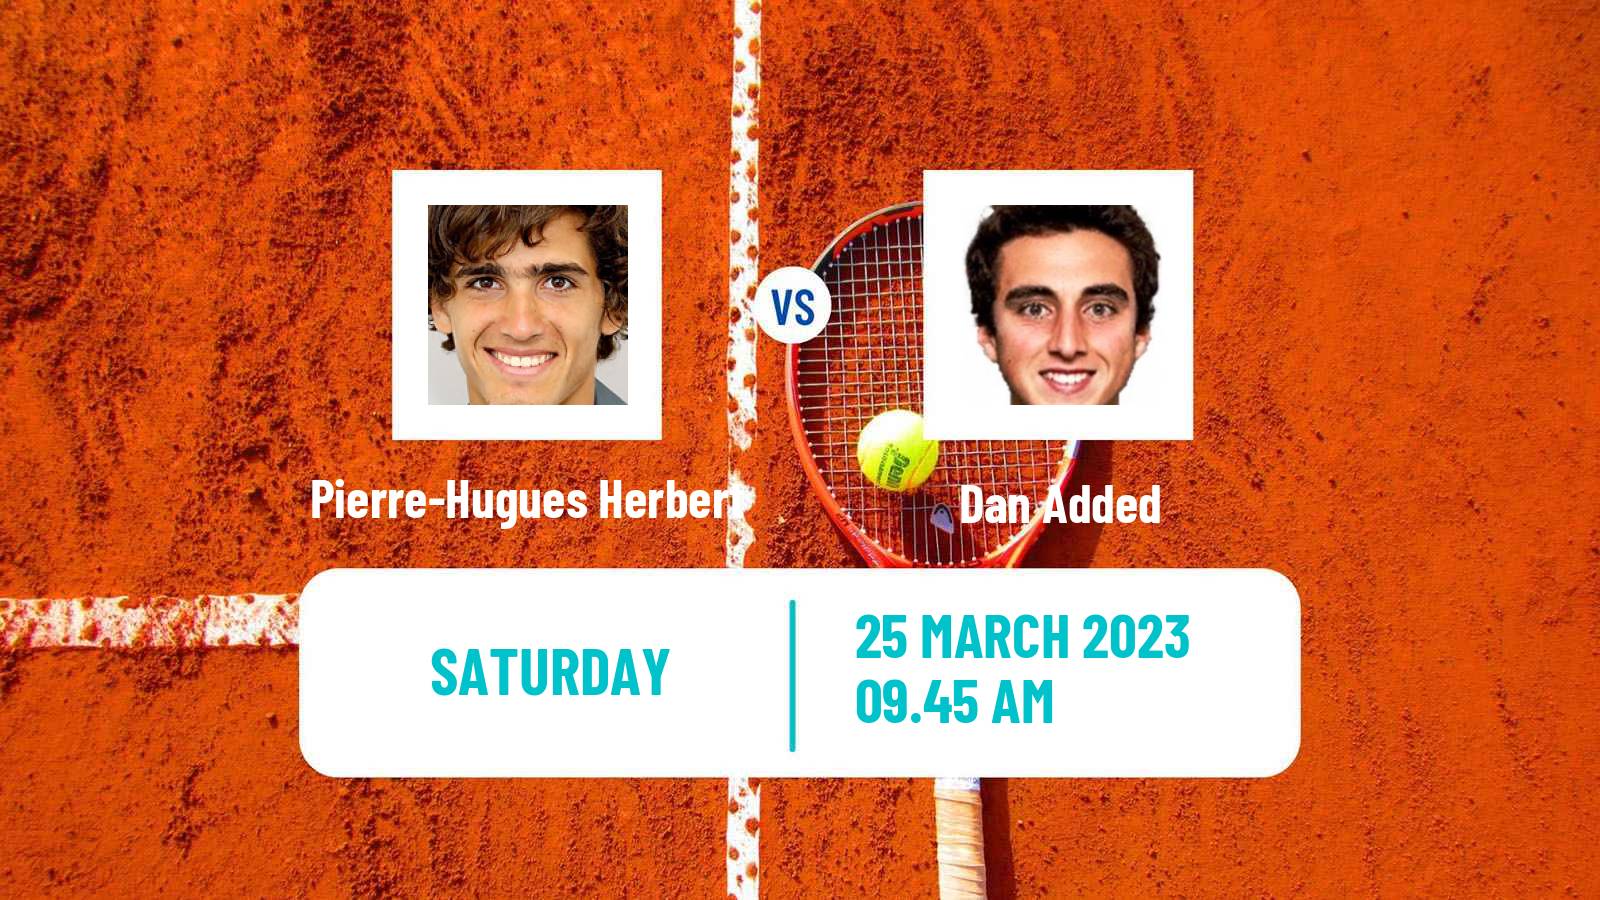 Tennis ATP Challenger Pierre-Hugues Herbert - Dan Added